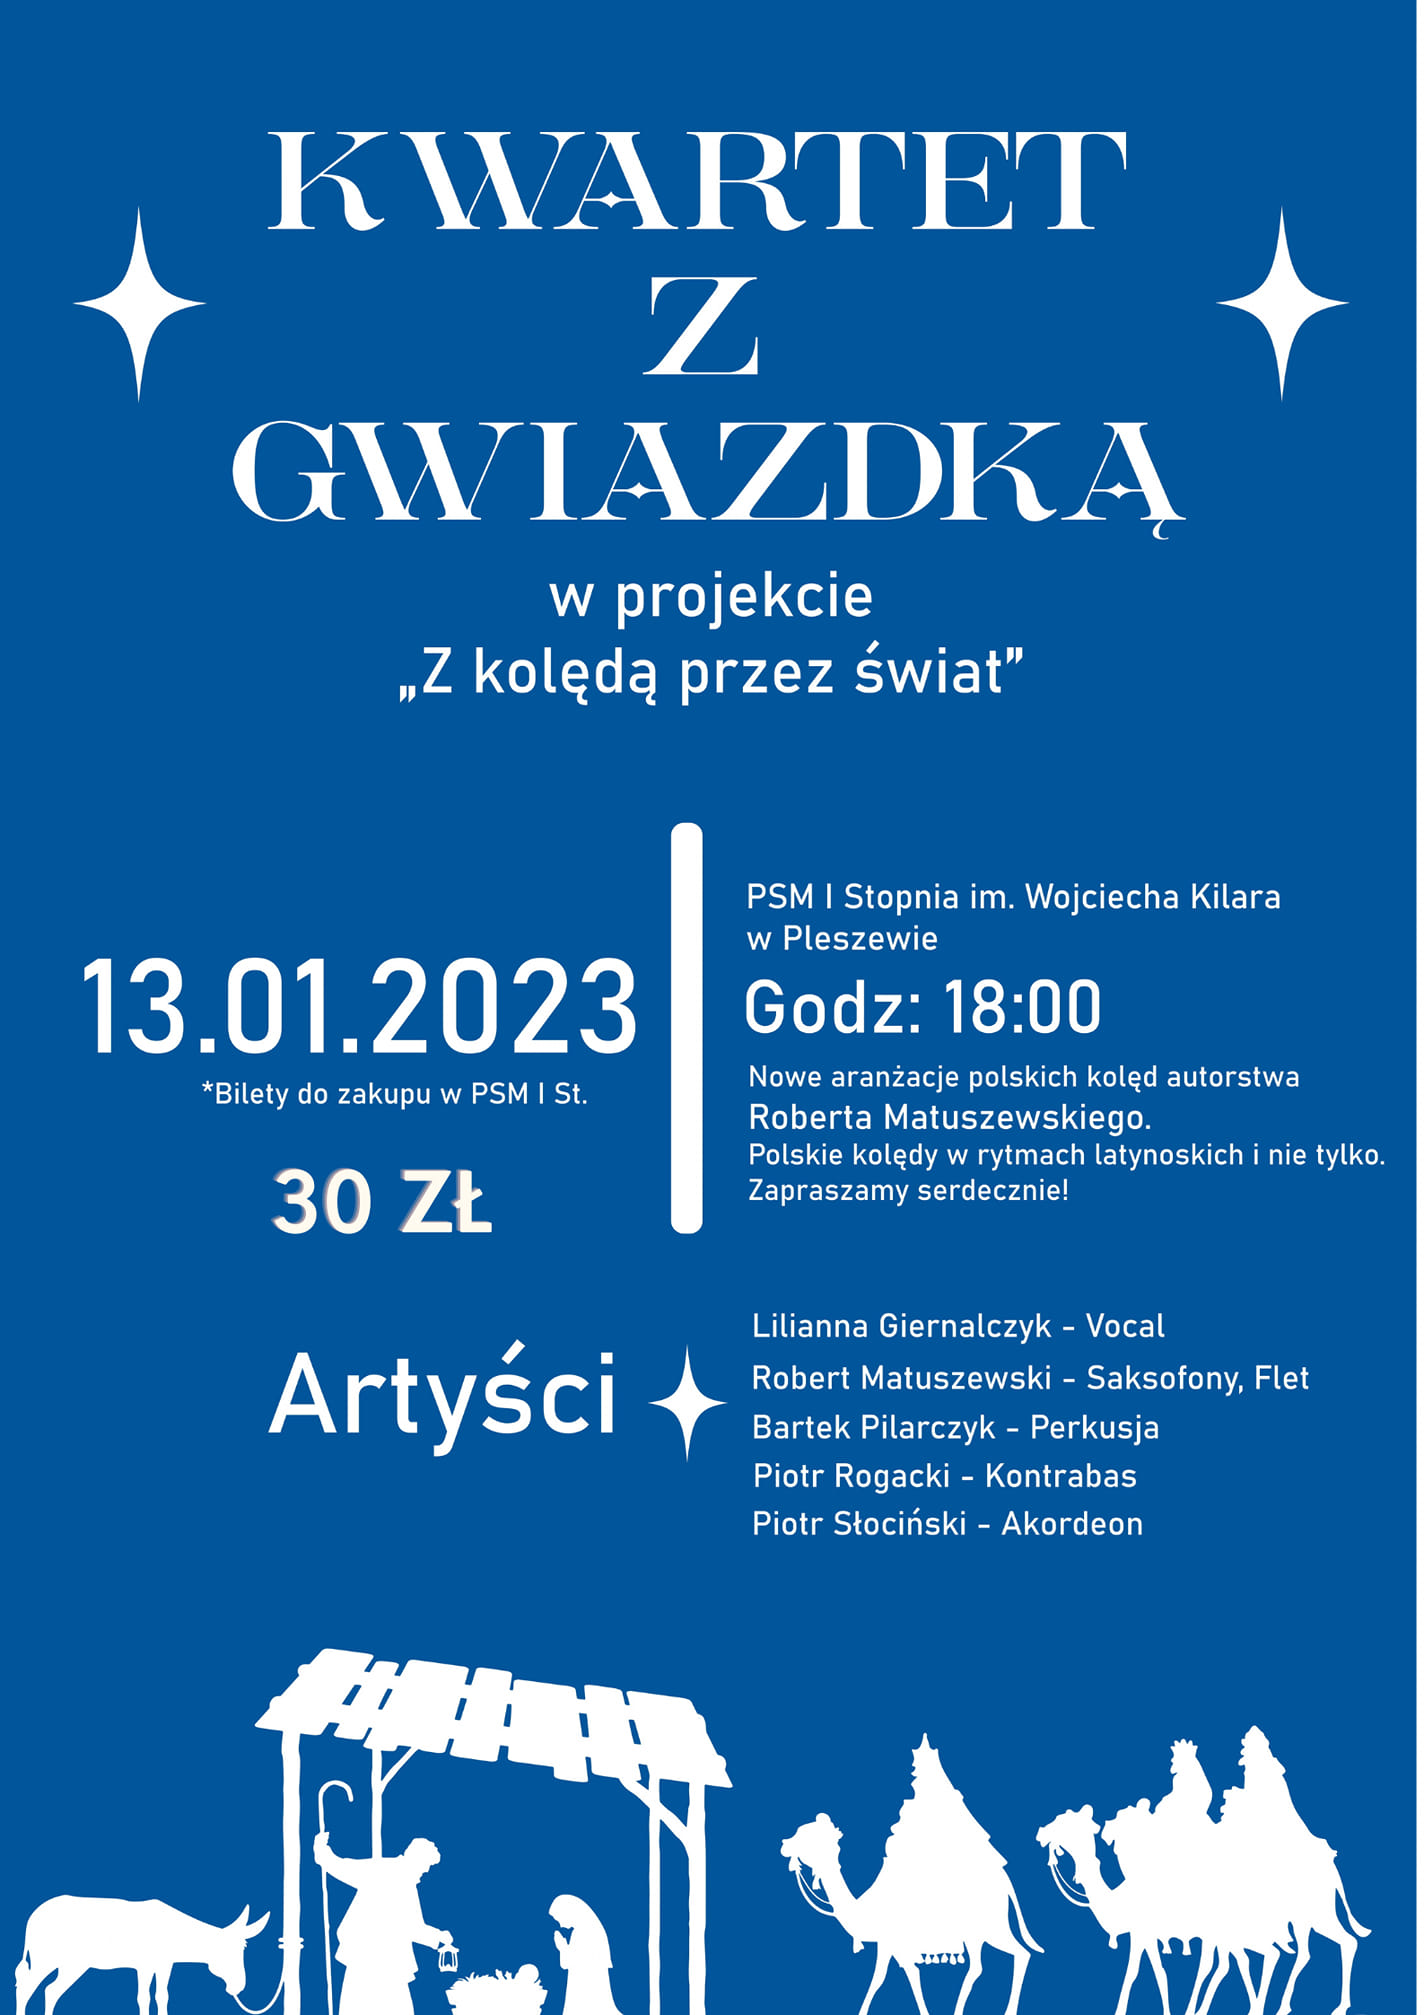 Plakat koncertu z projektu Z kolędą przez świat "Kwartet z Gwiazdką odbywającego się w Państwowej Szkole Muzycznej w Pleszewie 13 stycznia 2023 roku o godzinie 18:00